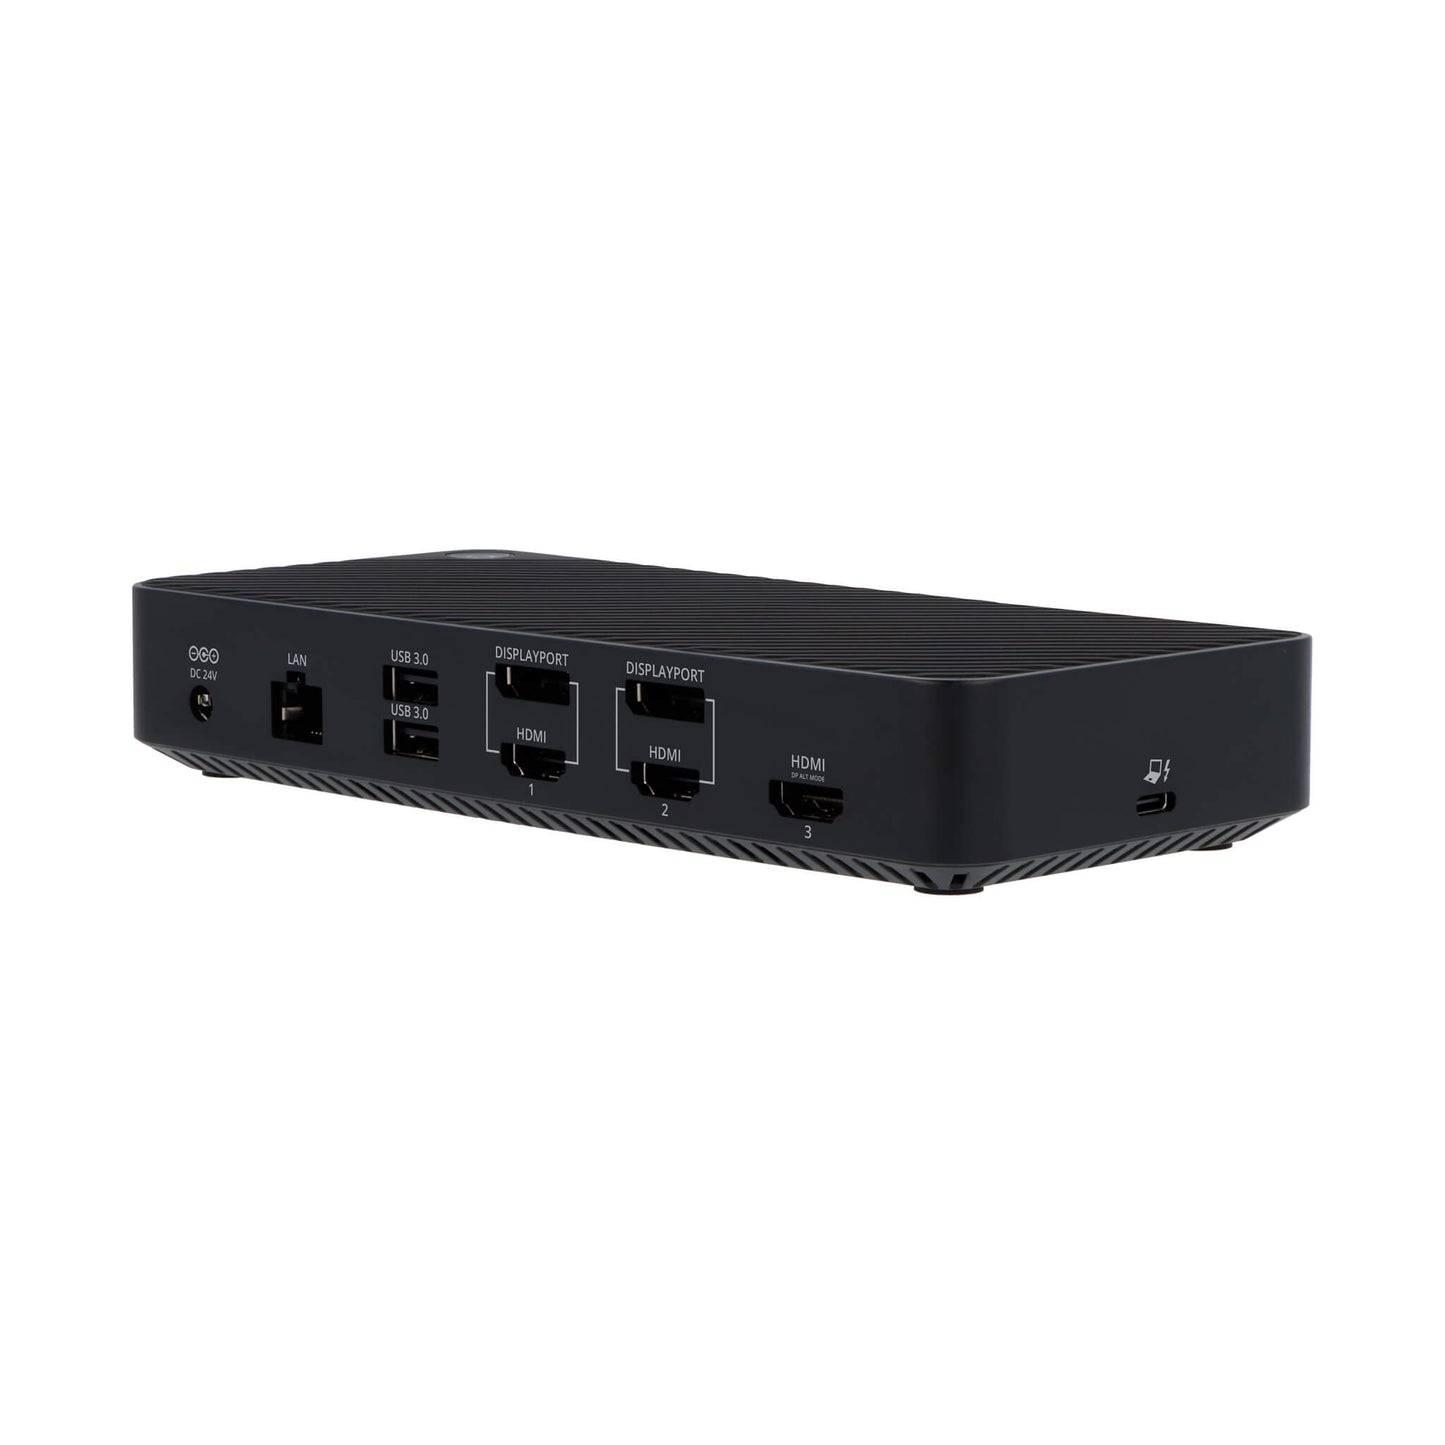 VT7000 Triple Display 4K USB 3.0 / USB-C Docking Station with 100W Pow –